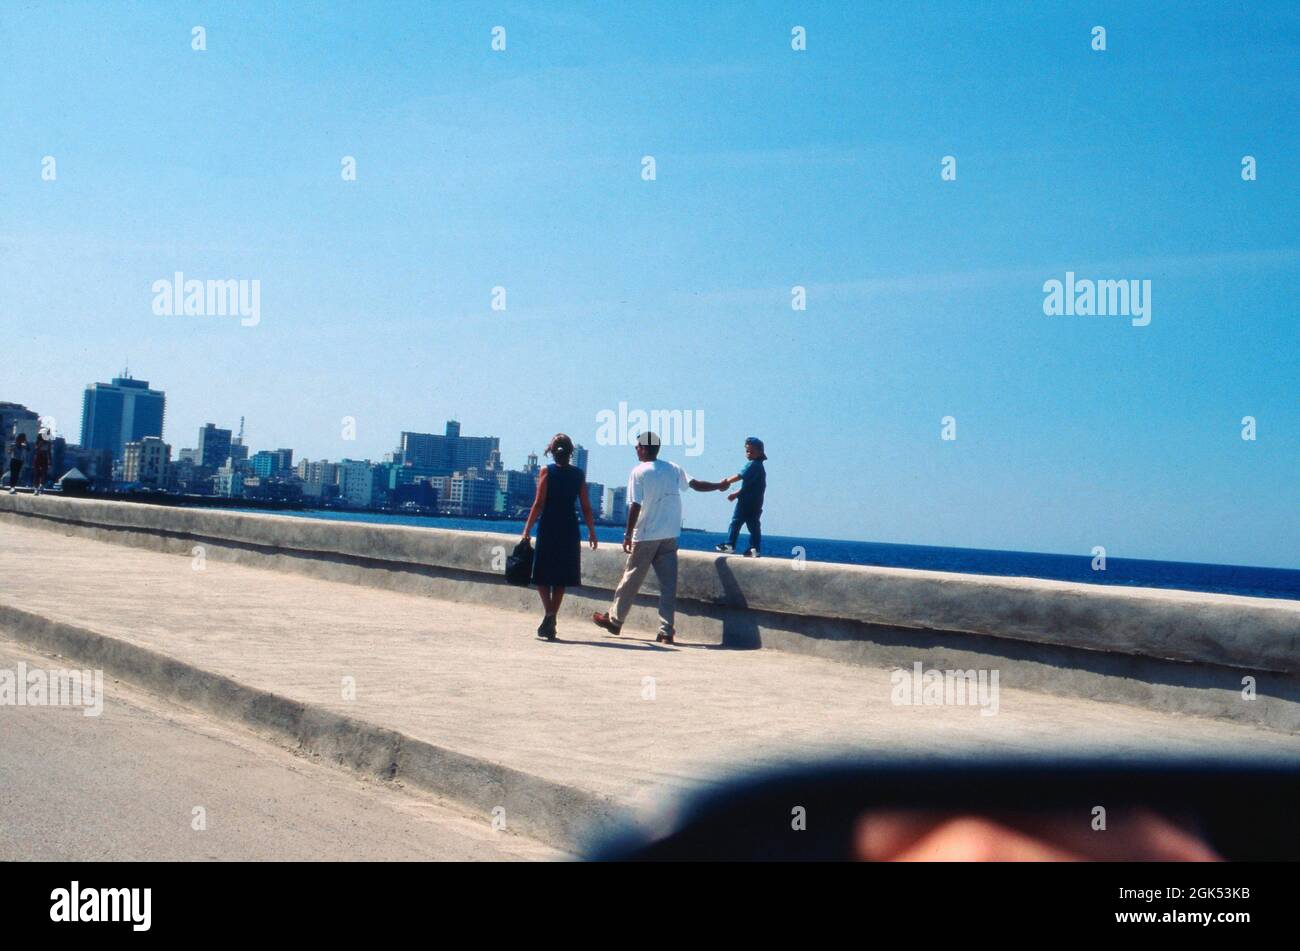 Eine Familie spaziert auf der Strandpromenade in Havanna auf Kuba, 2000. Promenade familiale sur la promenade de la Havane à Cuba, 2000. Banque D'Images